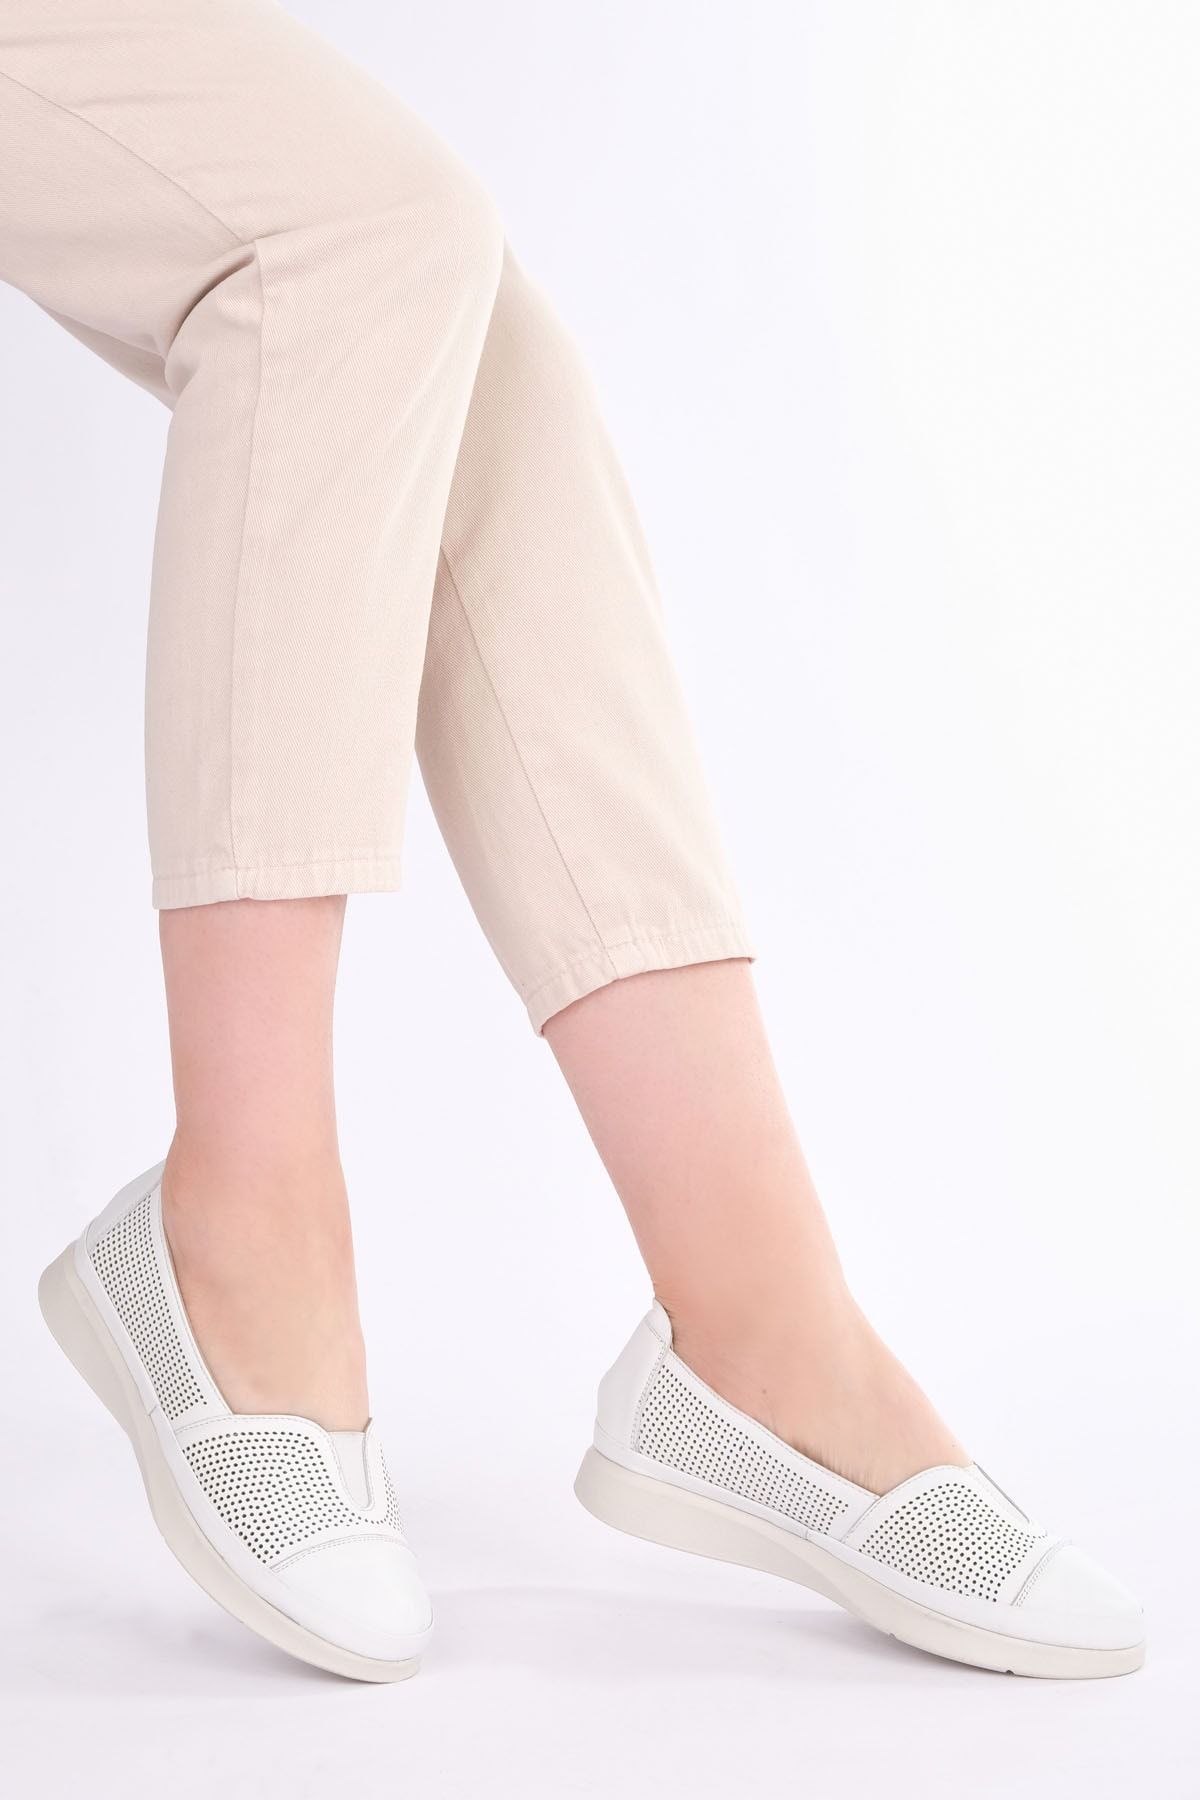 Marjin Kadın Hakiki Deri Comfort Ayakkabı Vona Beyaz